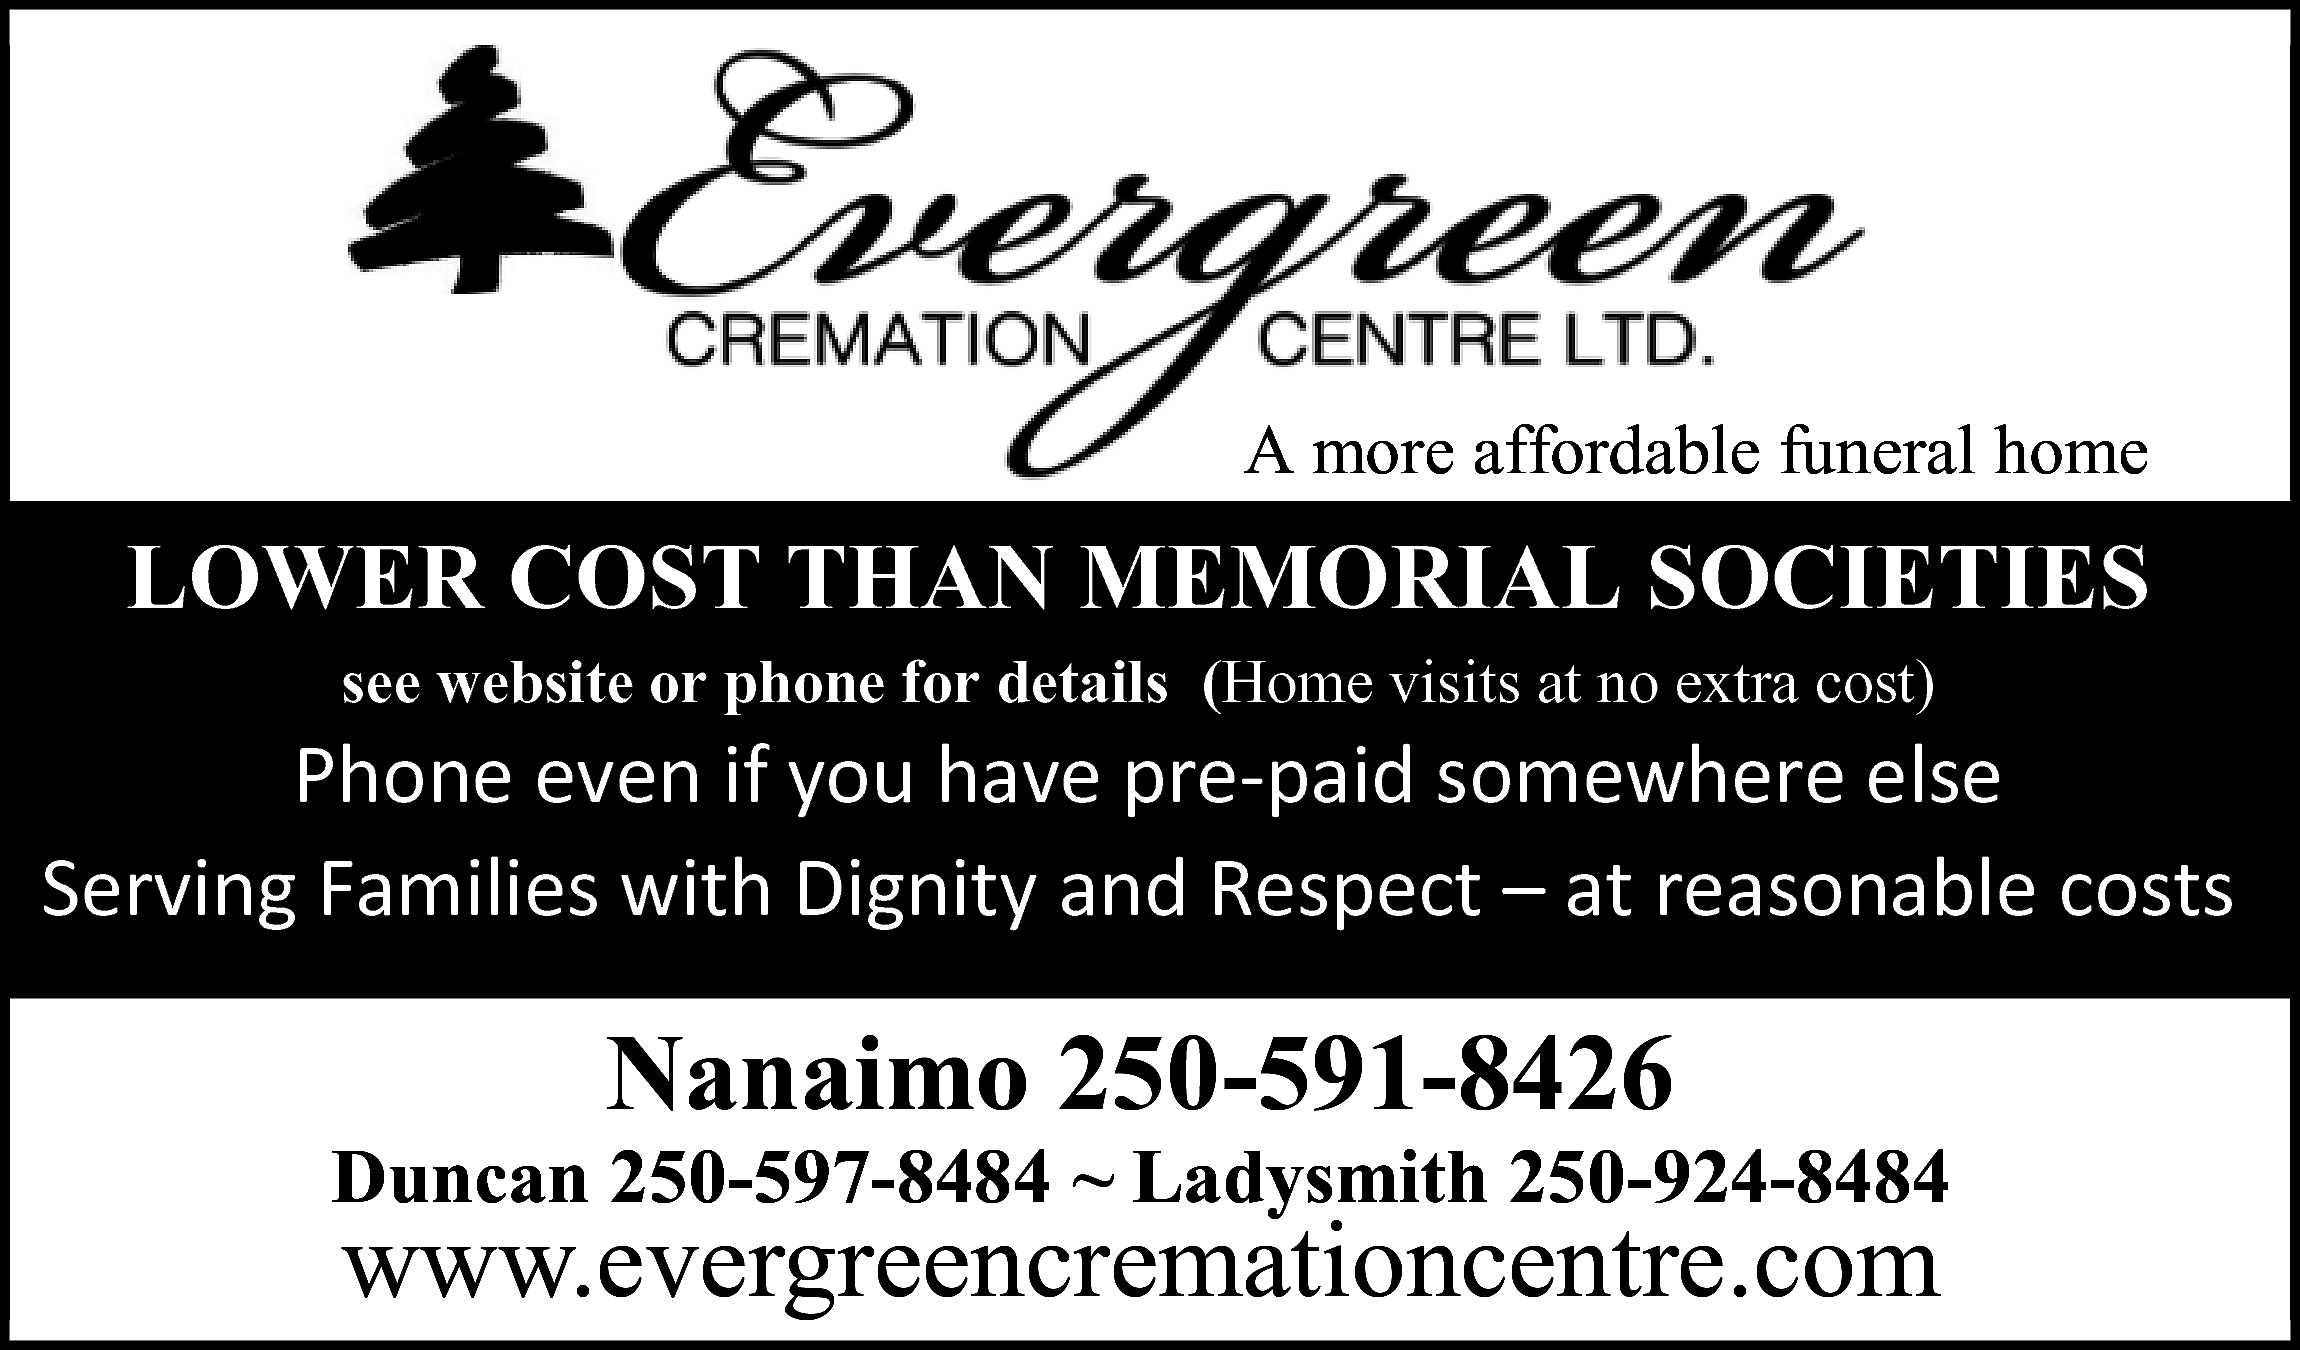  <br> <br>A more affordable      A more affordable funeral home    LOWER COST THAN MEMORIAL SOCIETIES  see website or phone for details (Home visits at no extra cost)      WŚŽŶĞĞǀĞŶŝĨǇŽƵŚĂǀĞƉƌĞͲƉĂŝĚƐŽŵĞǁŚĞƌĞĞůƐĞ   ^ĞƌǀŝŶŐ&ĂŵŝůŝĞƐǁŝƚŚŝŐŶŝƚǇĂŶĚZĞƐƉĞĐƚ–ĂƚƌĞĂƐŽŶĂďůĞĐŽƐƚƐ      Nanaimo 250-591-8426  Duncan 250-597-8484 ~ Ladysmith 250-924-8484    www.evergreencremationcentre.com    